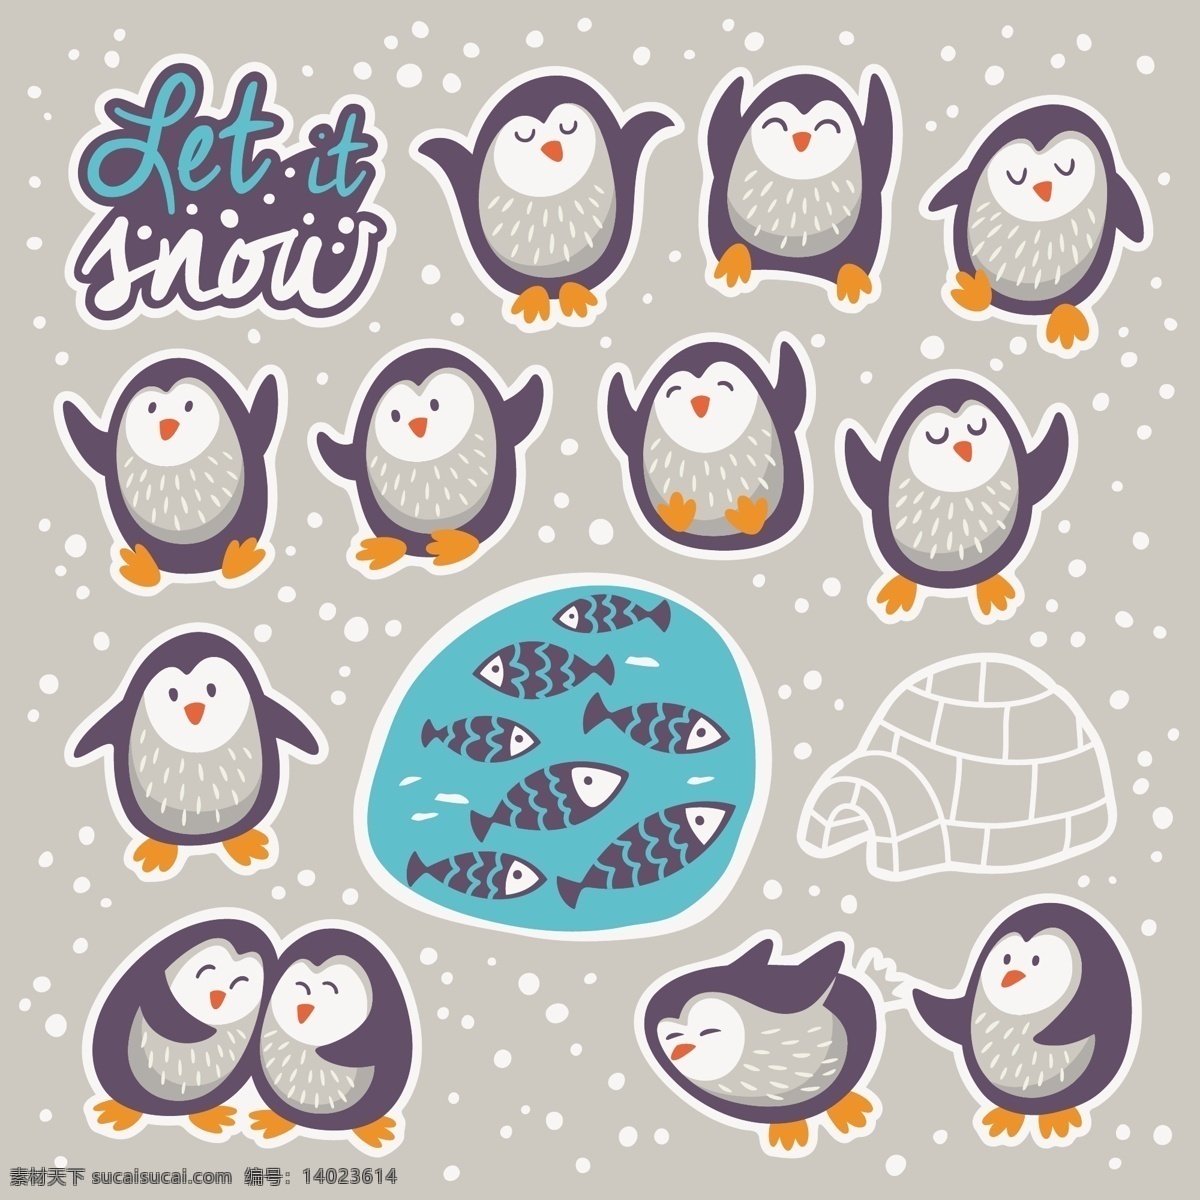 可爱 企鹅 卡通 动物 造型 矢量 黑白 小鱼 冰面 广告背景 免费素材 卡通角色